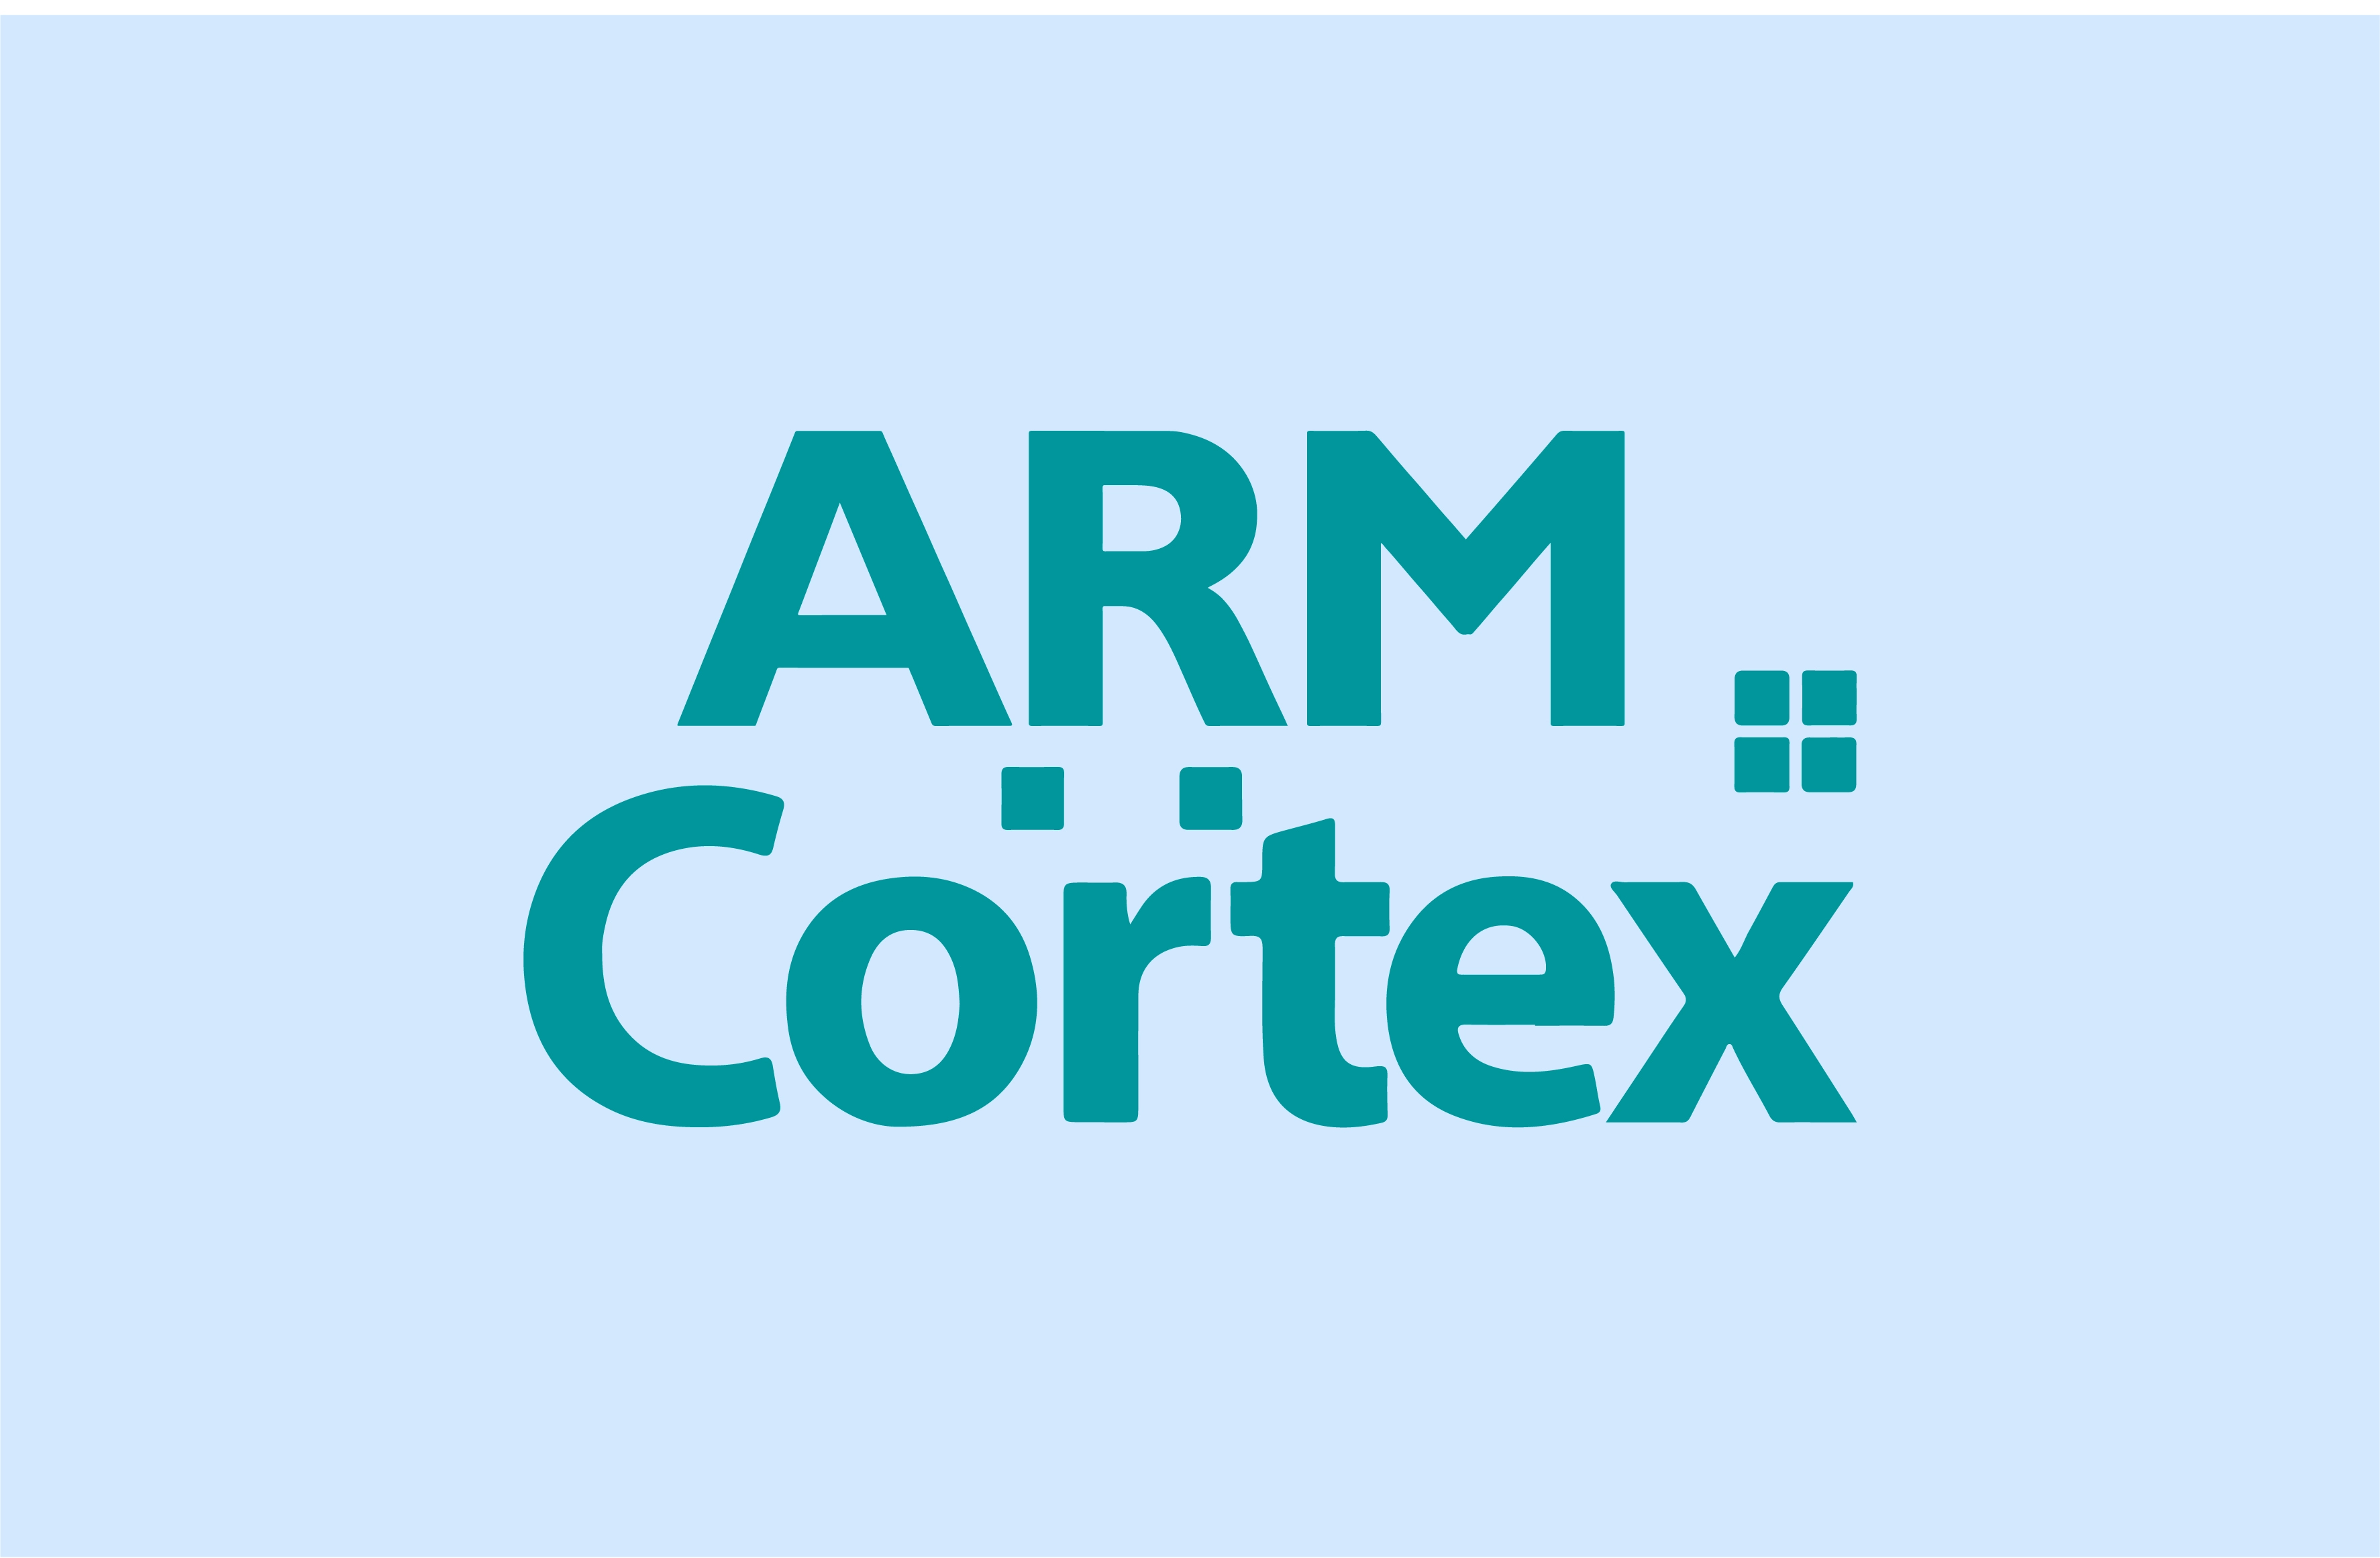 Arm Cortex Training